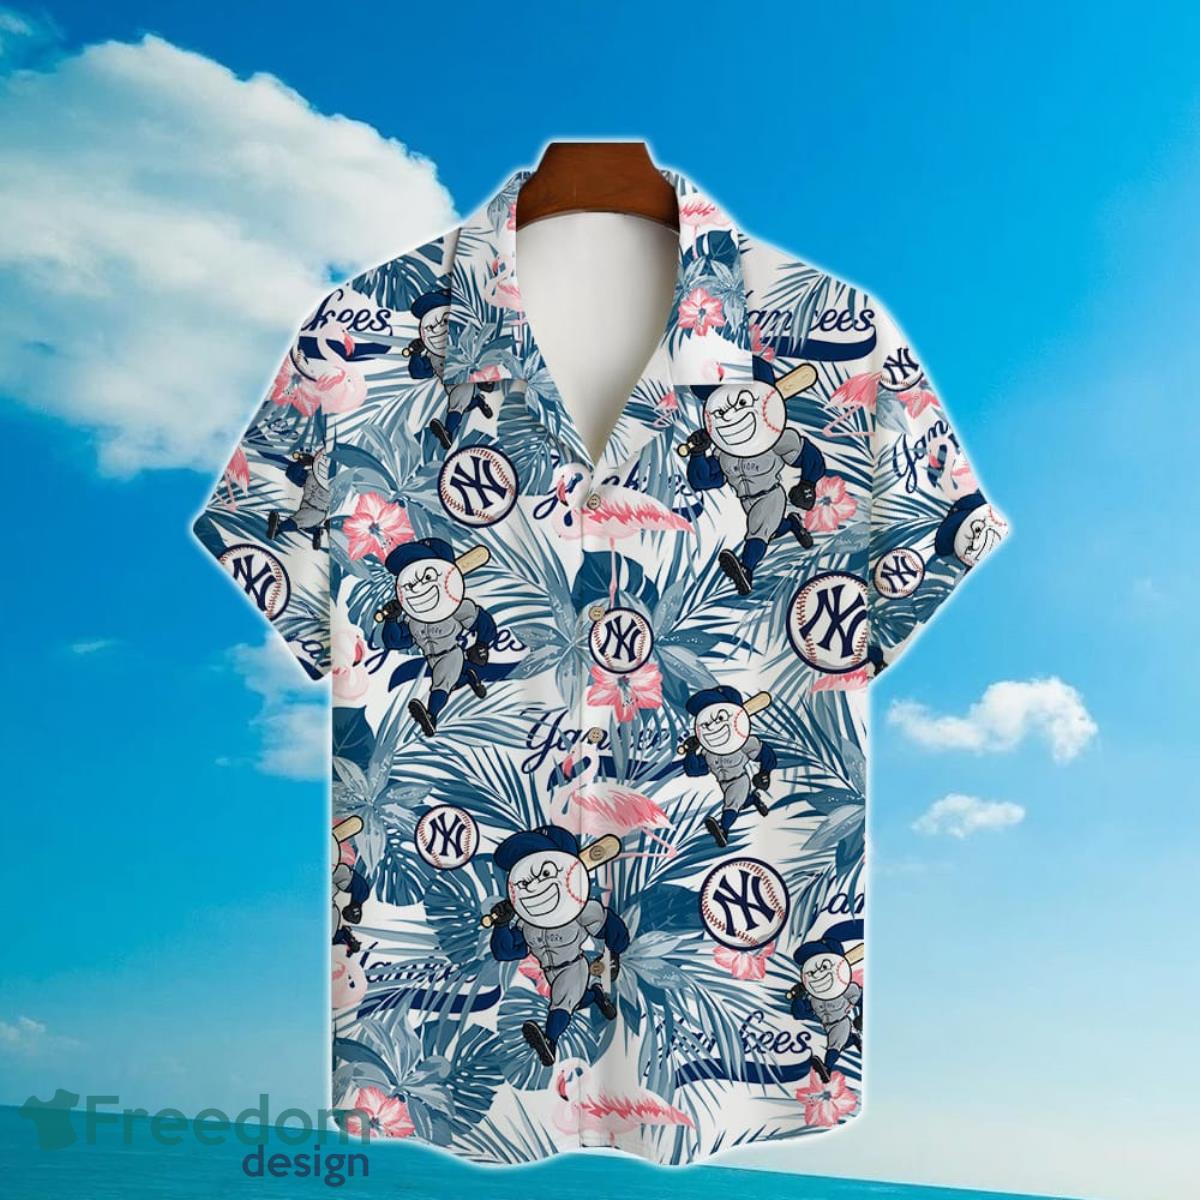 New York Yankees Major League Baseball 3D Print Hawaiian Shirt